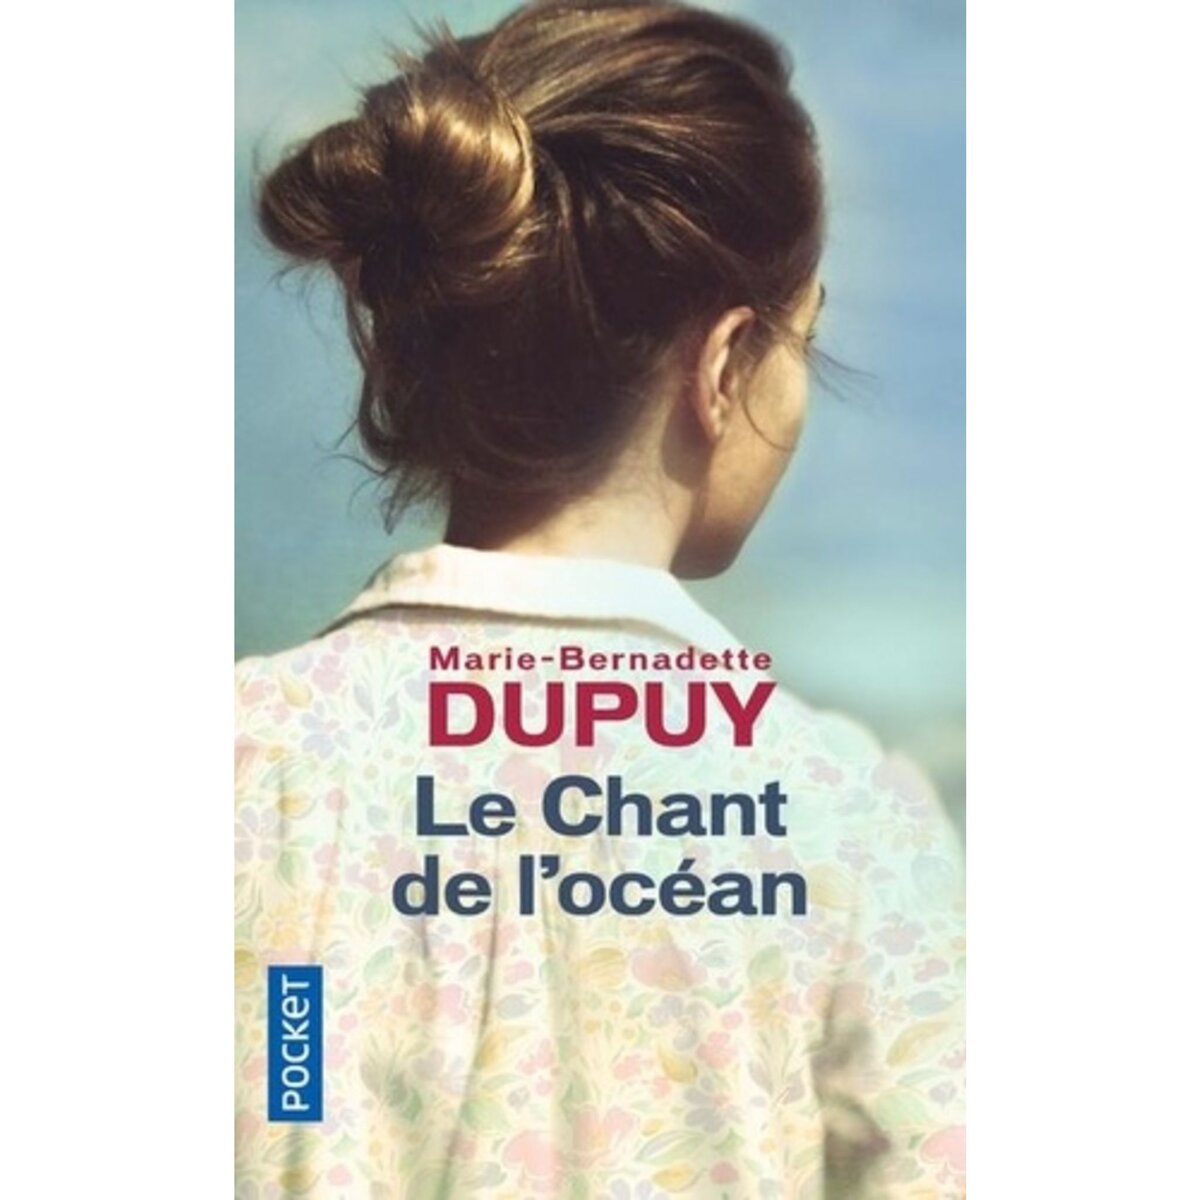  LE CHANT DE L'OCEAN, Dupuy Marie-Bernadette